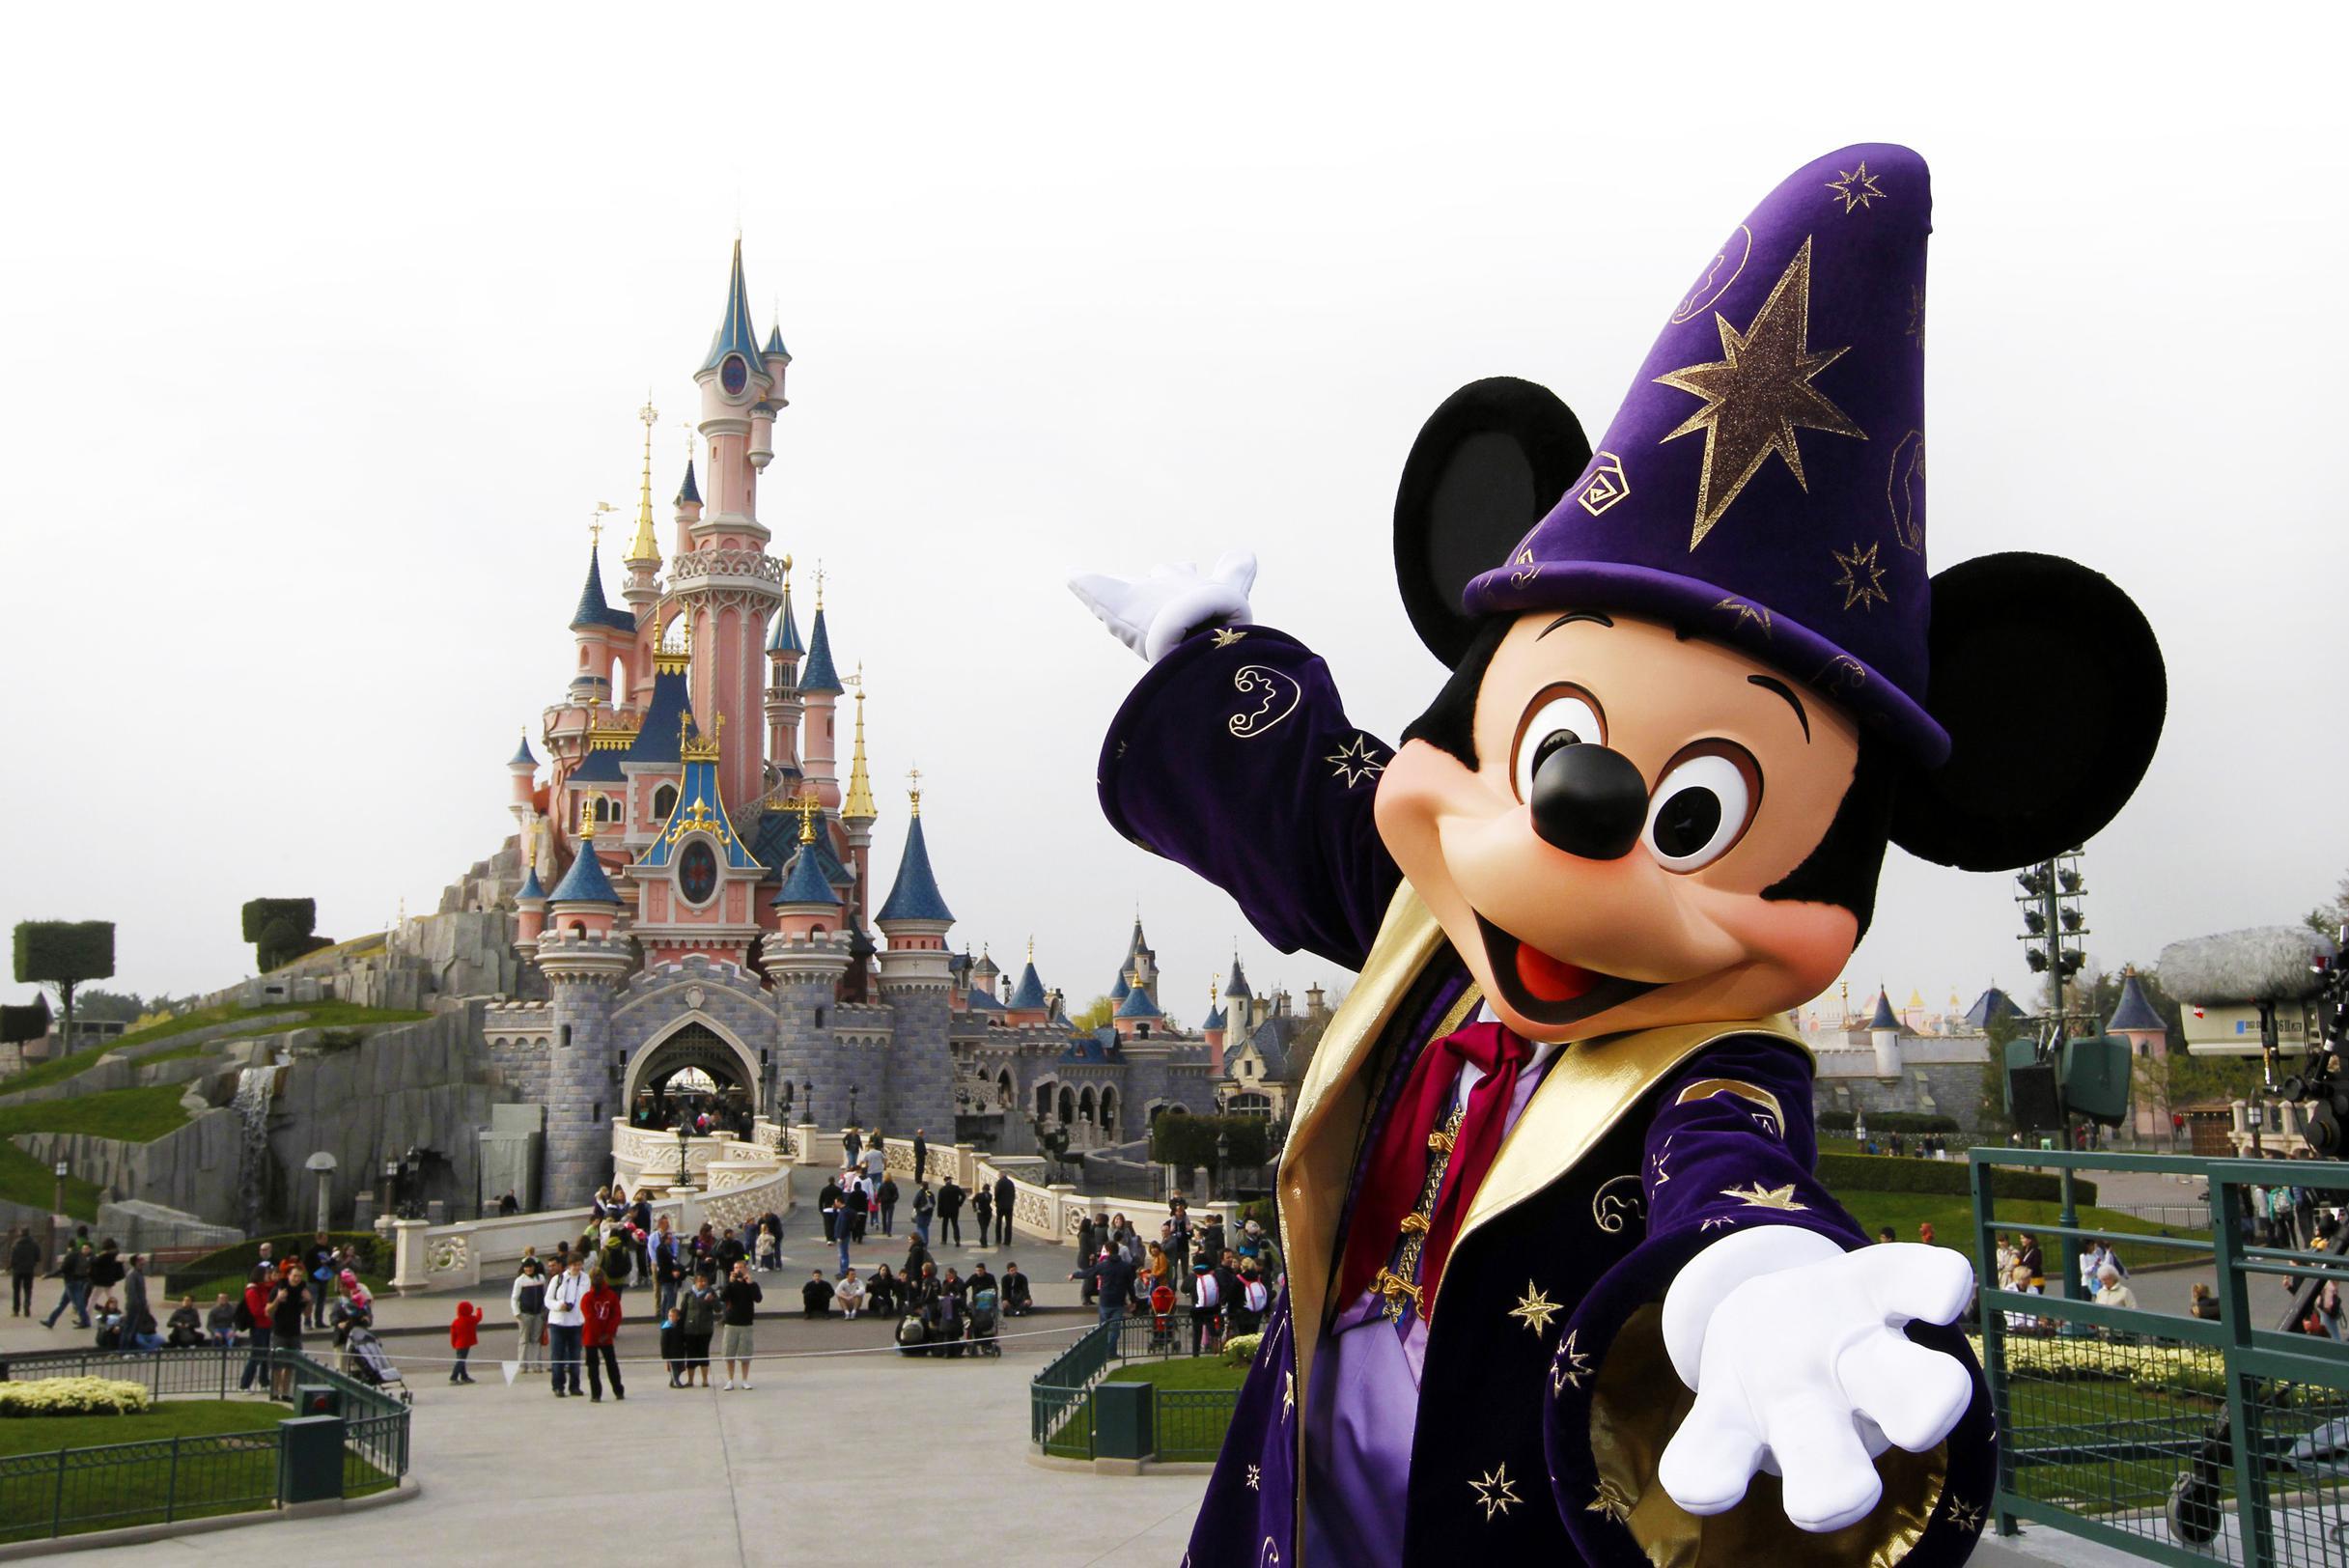 Vergevingsgezind Slovenië Verrast Brusselse belastingambtenaren dan toch niet naar Disneyland Parijs:  familiedag geschrapt wegens te duur (Brussel) | Het Nieuwsblad Mobile